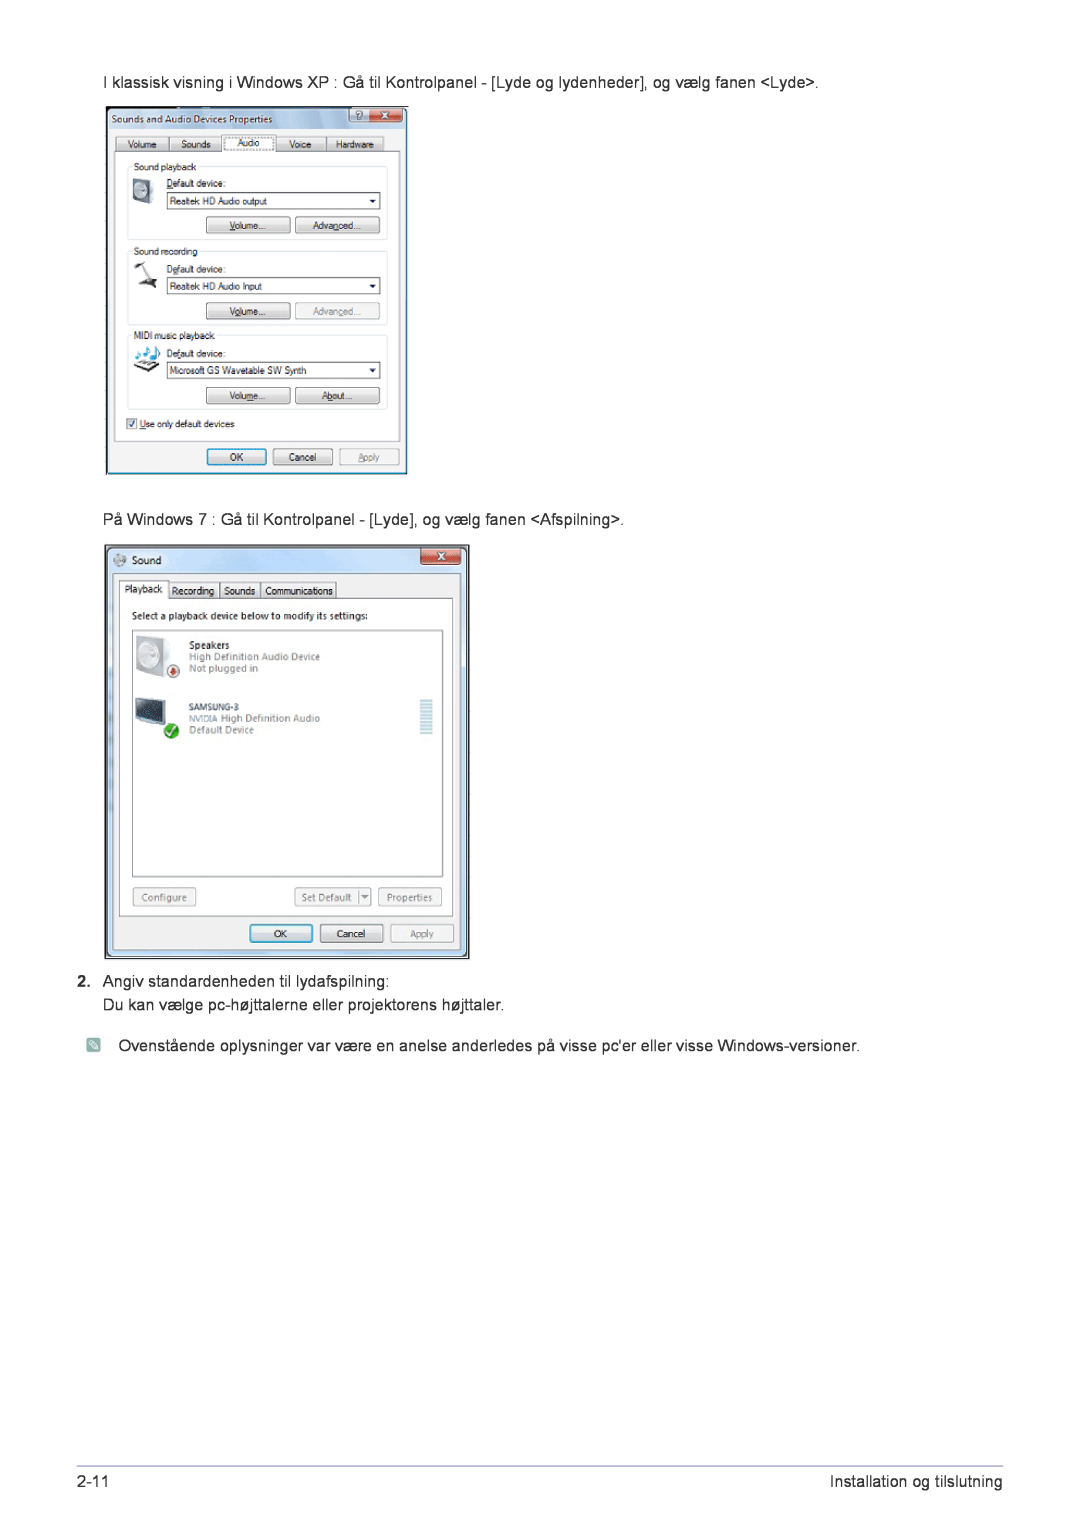 Samsung SP2553XWCX/EN På Windows 7 Gå til Kontrolpanel - Lyde, og vælg fanen Afspilning, 2-11, Installation og tilslutning 